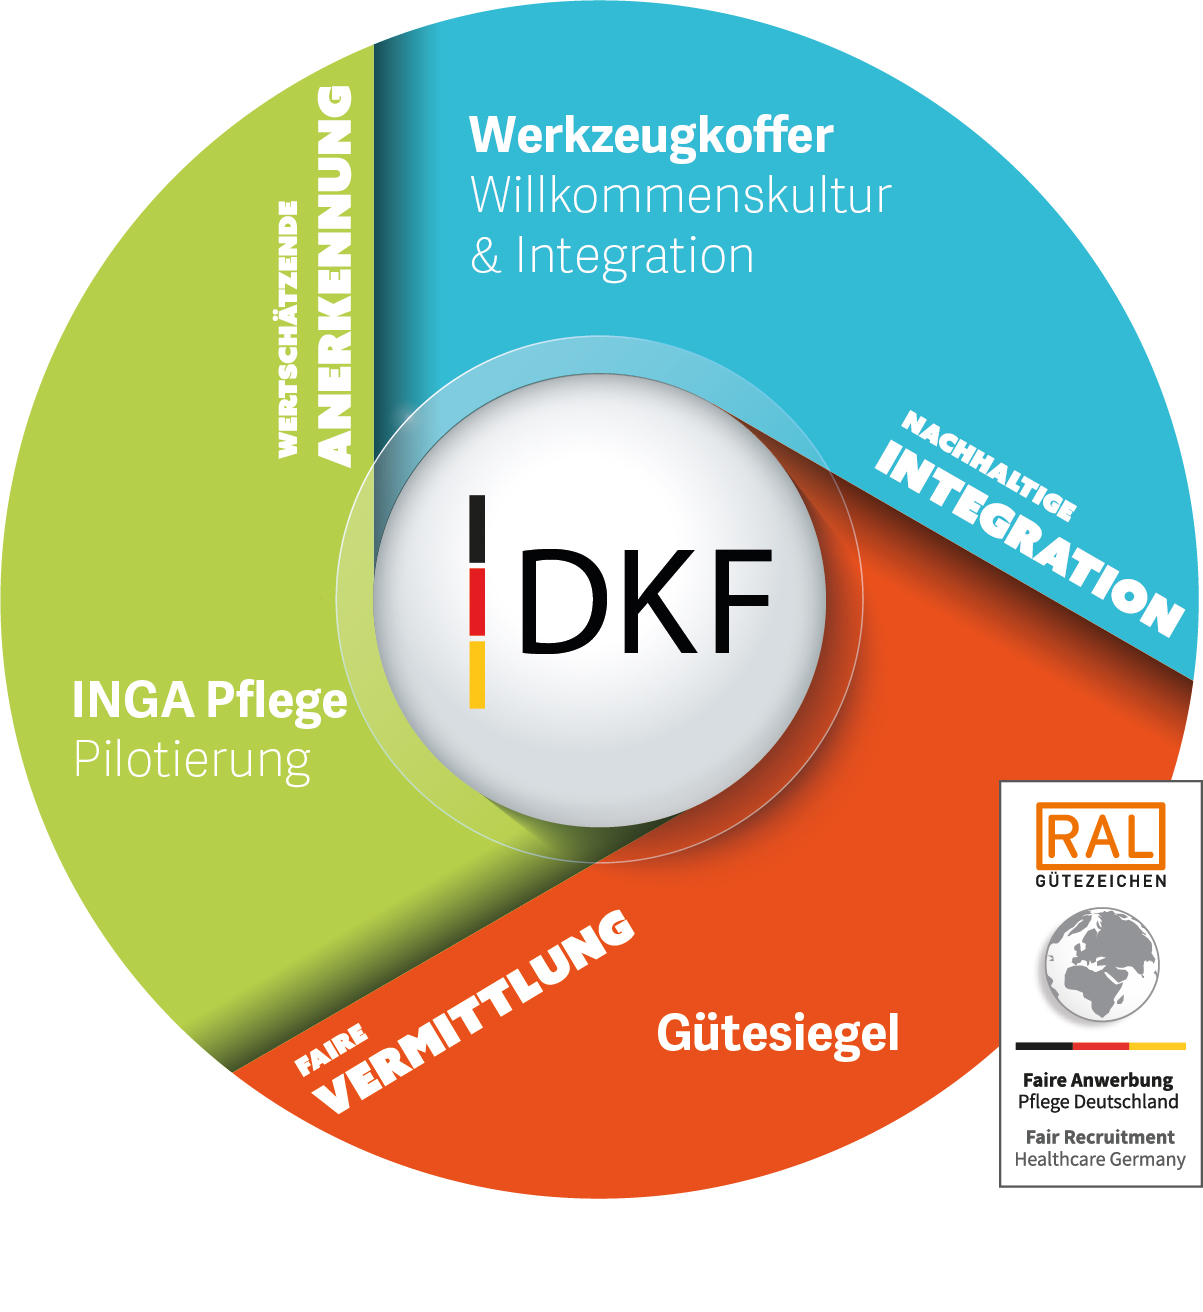 Grafik zu den Tätigkeitsfeldern des DKF: nachhaltige Integration, wertschätzende Anerkennung, faire Vermittlung